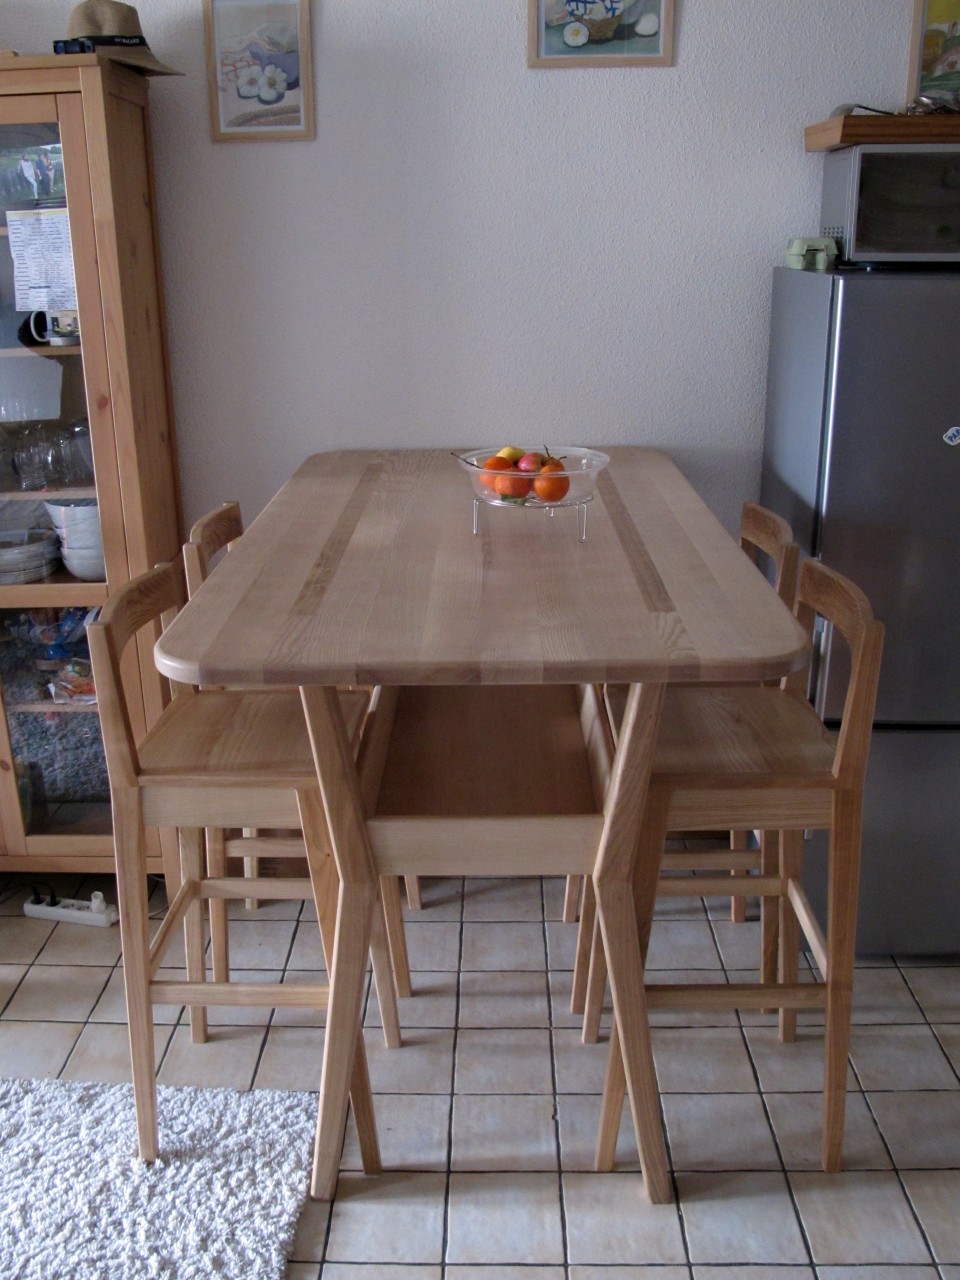 Cette table bar trouvera sa place dans une cuisine, un salon ou une salle à manger.